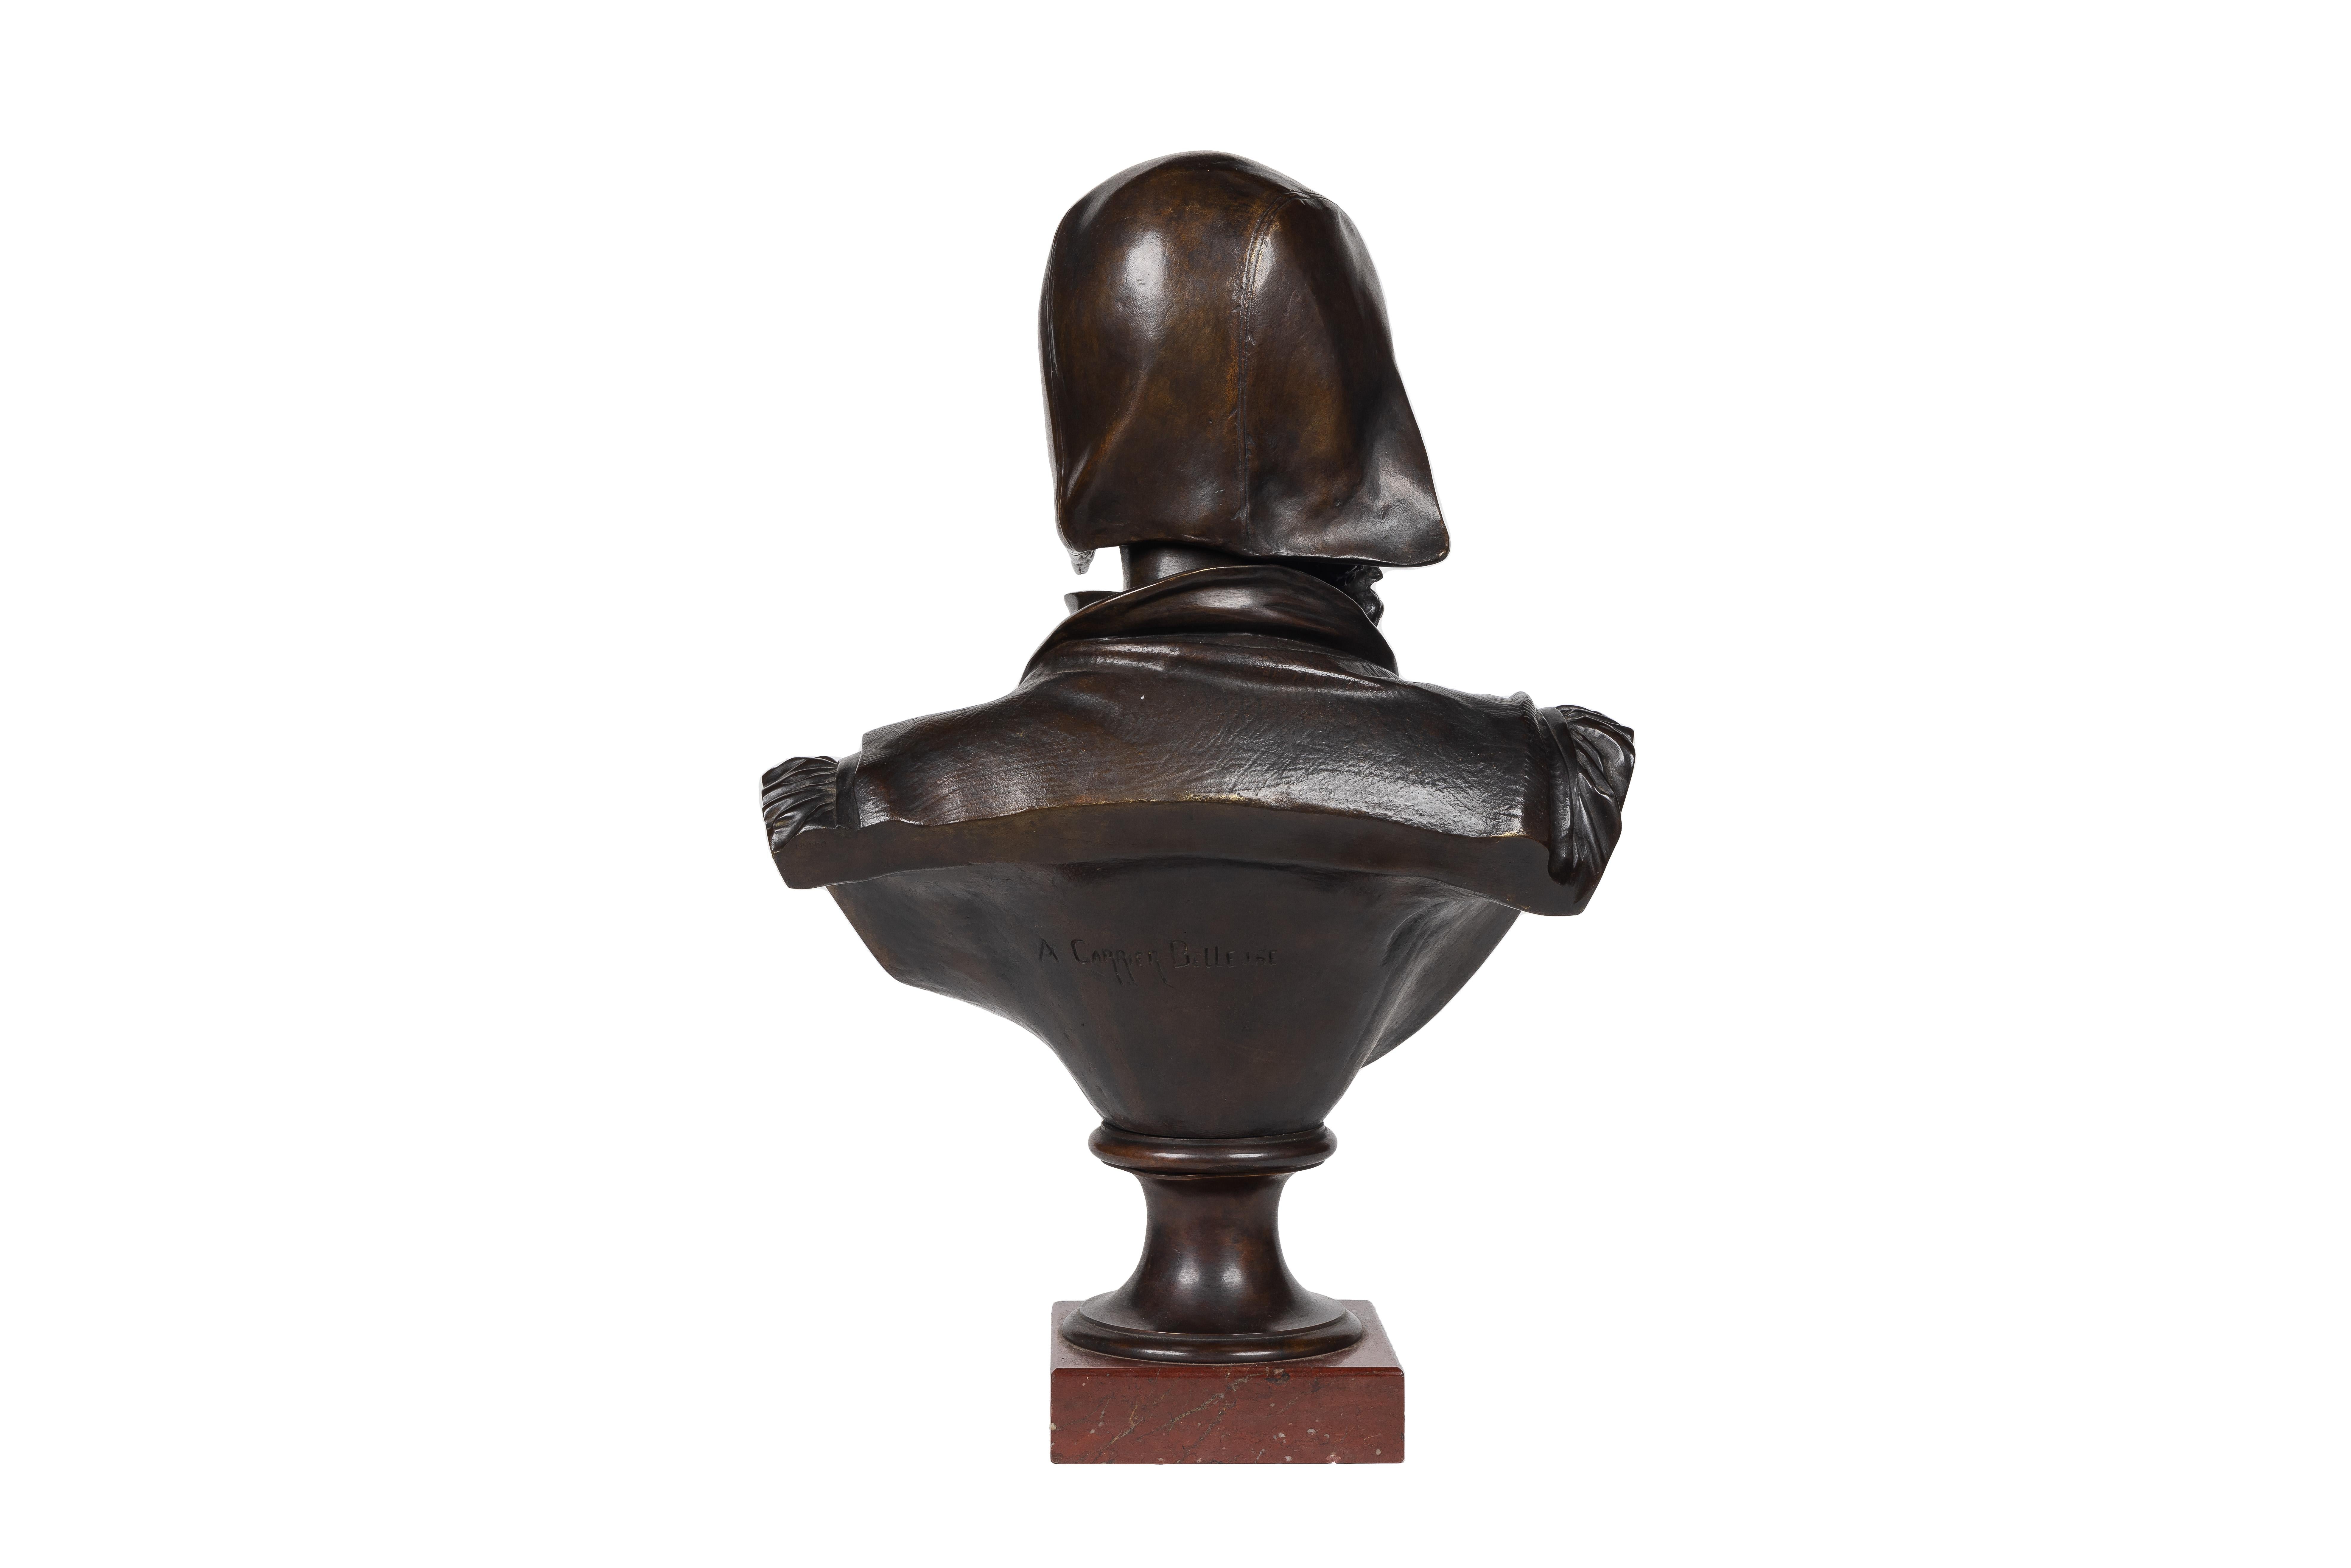 Un rare et important buste de Michel-Ange en bronze - Or Figurative Sculpture par Albert-Ernest Carrier-Belleuse